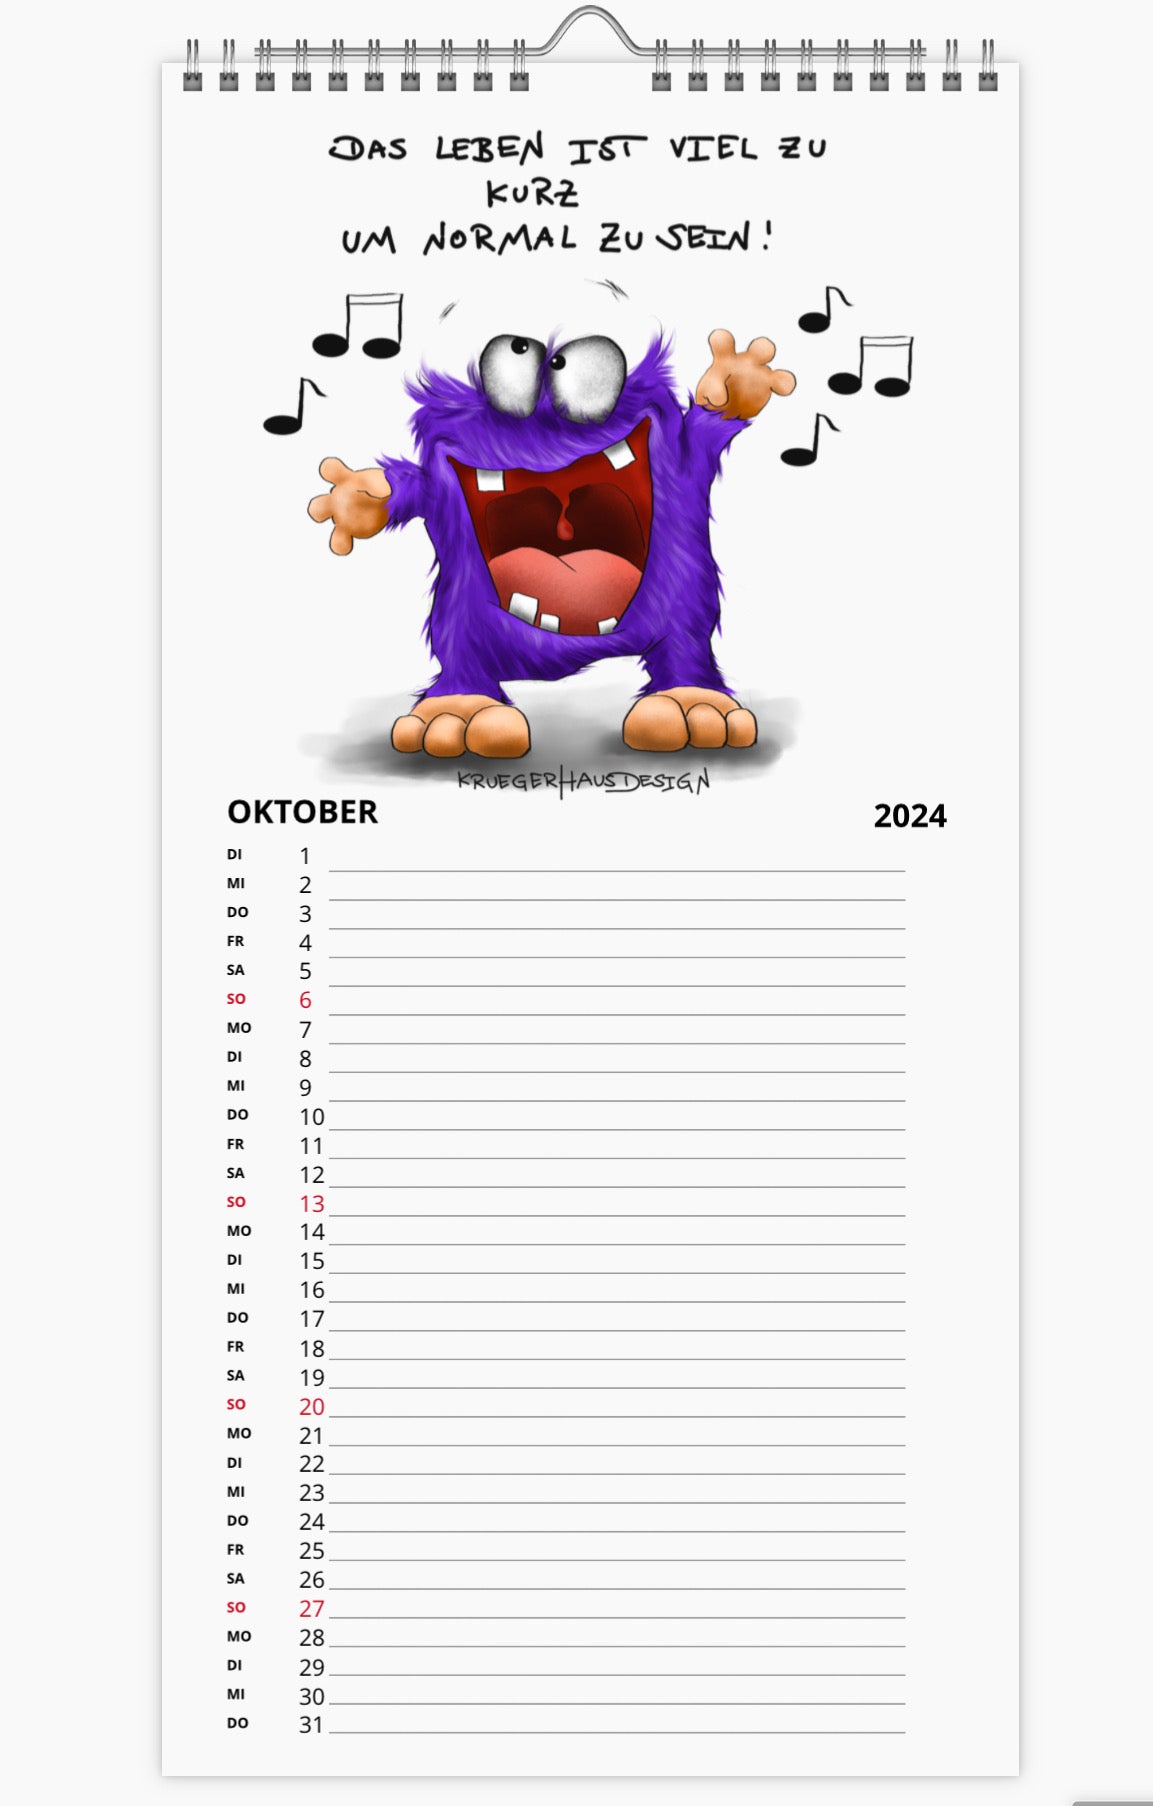 Kalender Terminkalender Küchenkalender groß  Kruegerhausdesign Monster 2024 Design  1